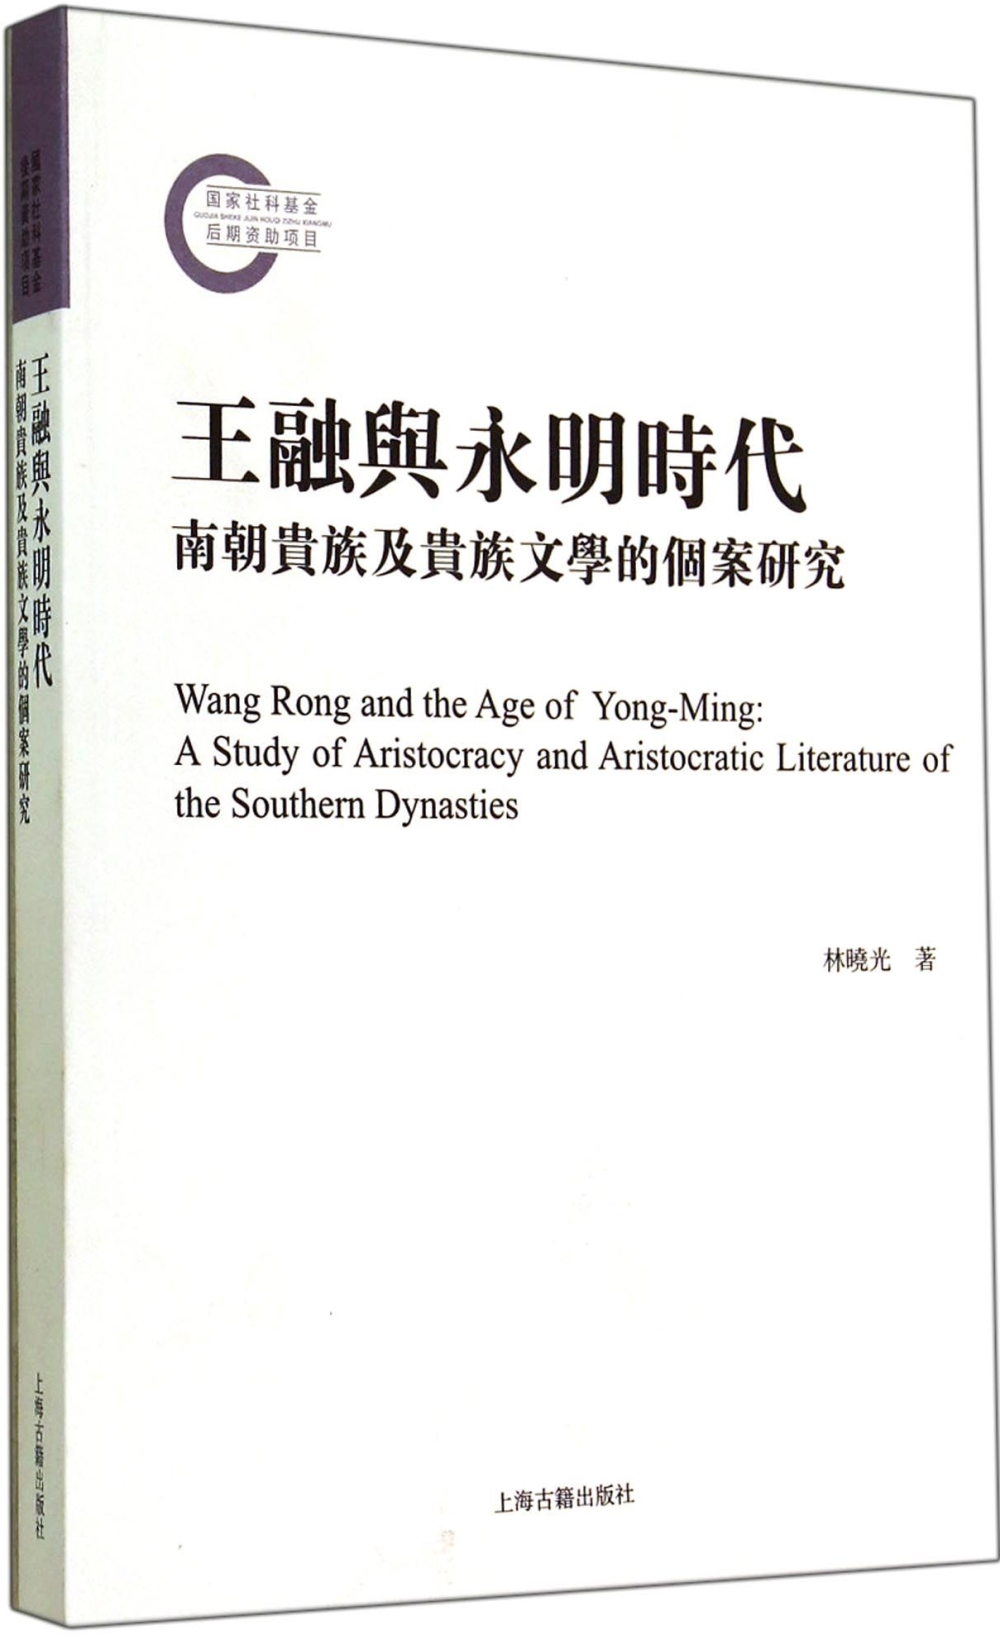 王融與永明時代：南朝貴族及貴族文學的個案研究